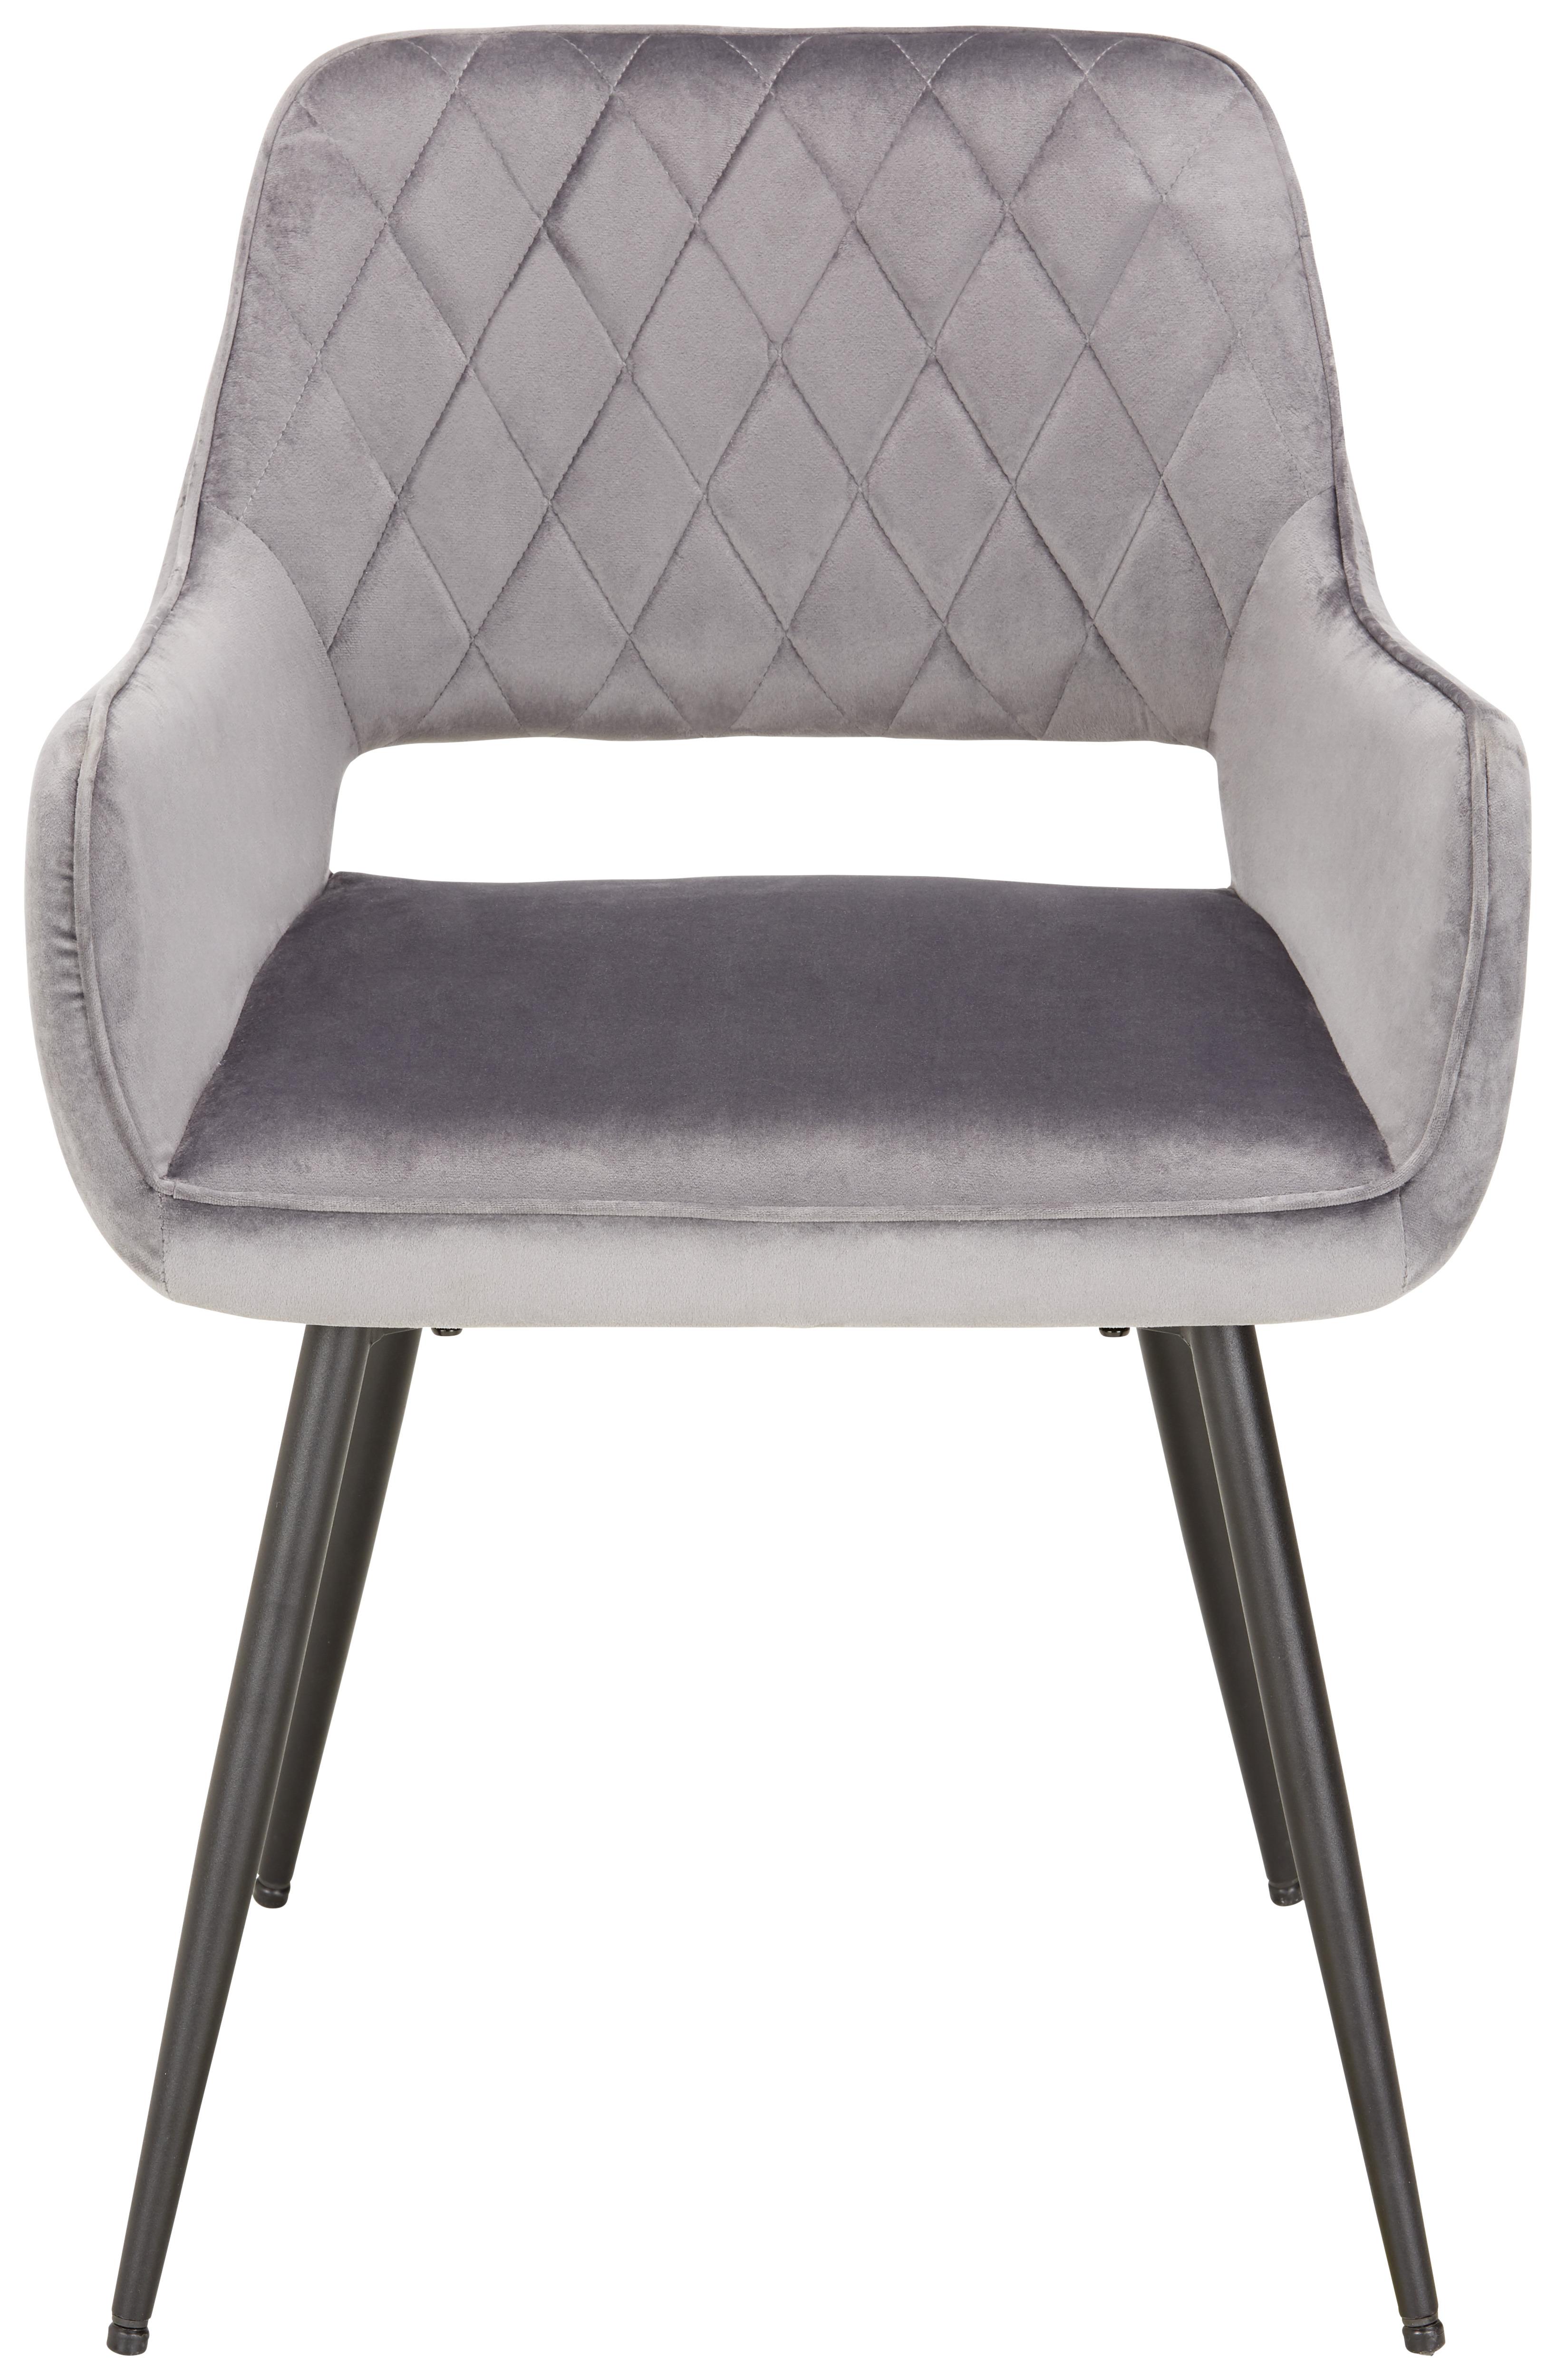 Stuhl in Grau - Schwarz/Grau, Modern, Textil/Metall (55/80,5/59,5cm) - Based